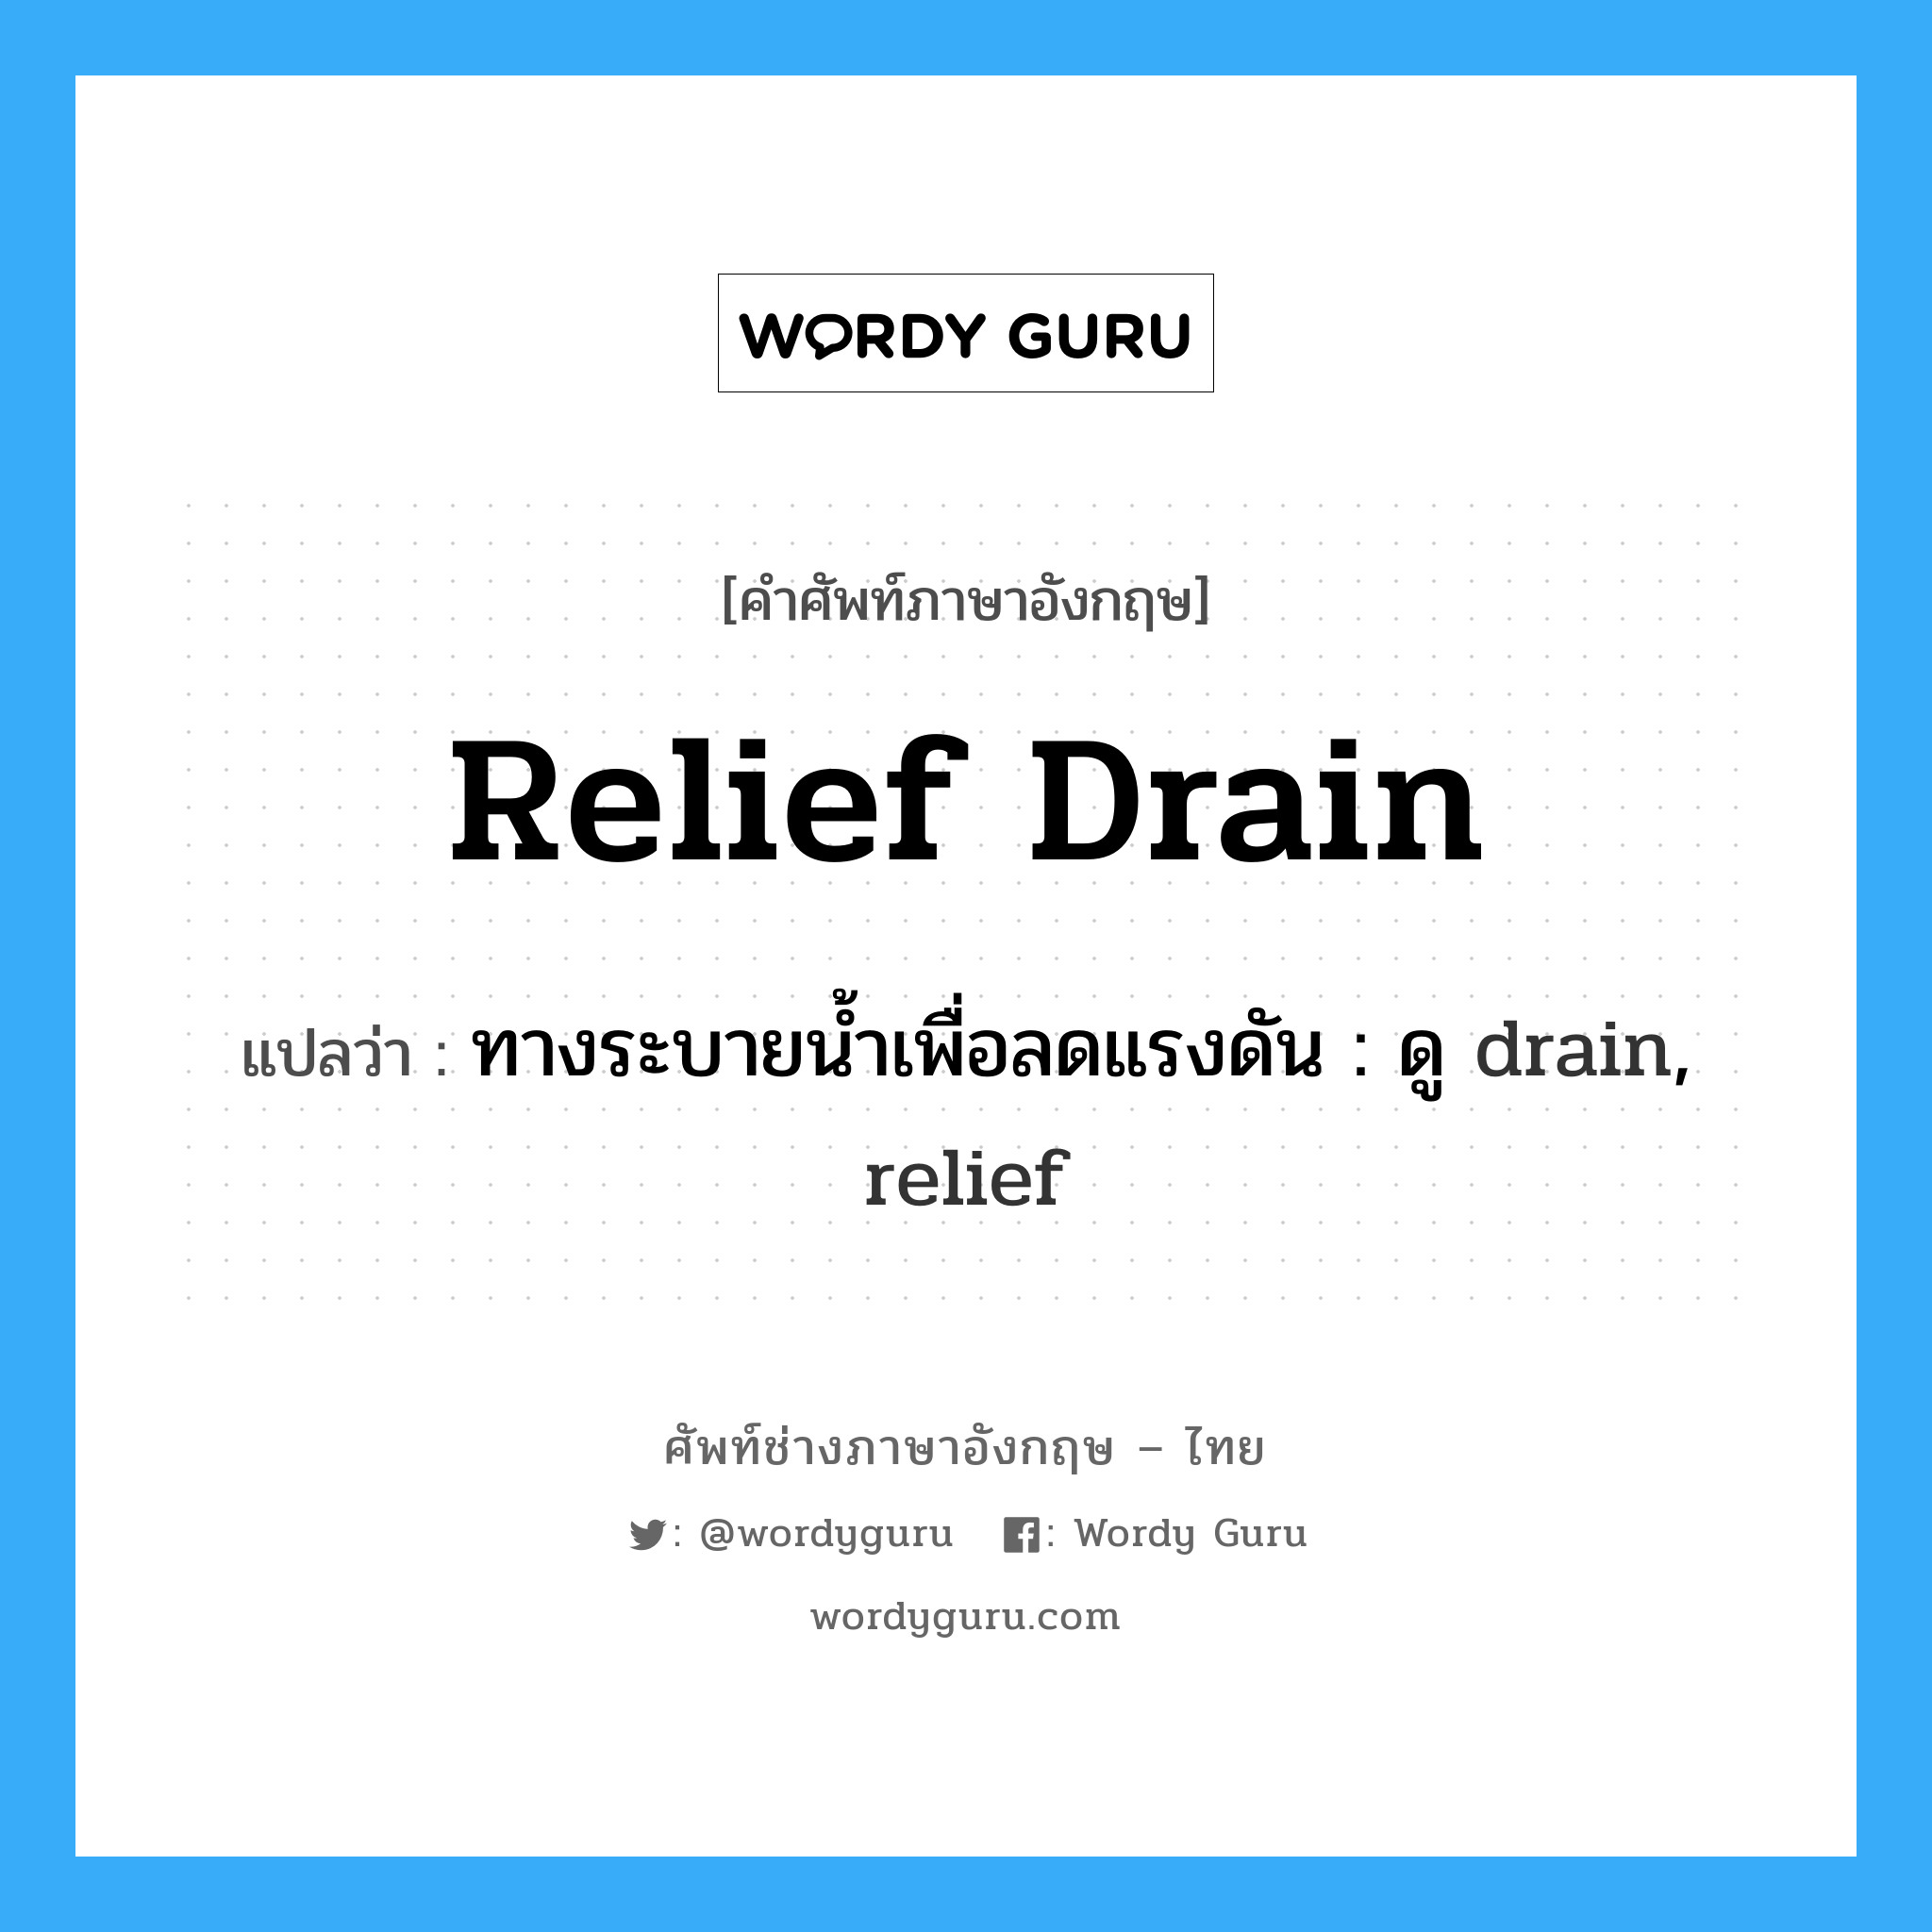 ทางระบายน้ำเพื่อลดแรงดัน : ดู drain, relief ภาษาอังกฤษ?, คำศัพท์ช่างภาษาอังกฤษ - ไทย ทางระบายน้ำเพื่อลดแรงดัน : ดู drain, relief คำศัพท์ภาษาอังกฤษ ทางระบายน้ำเพื่อลดแรงดัน : ดู drain, relief แปลว่า relief drain